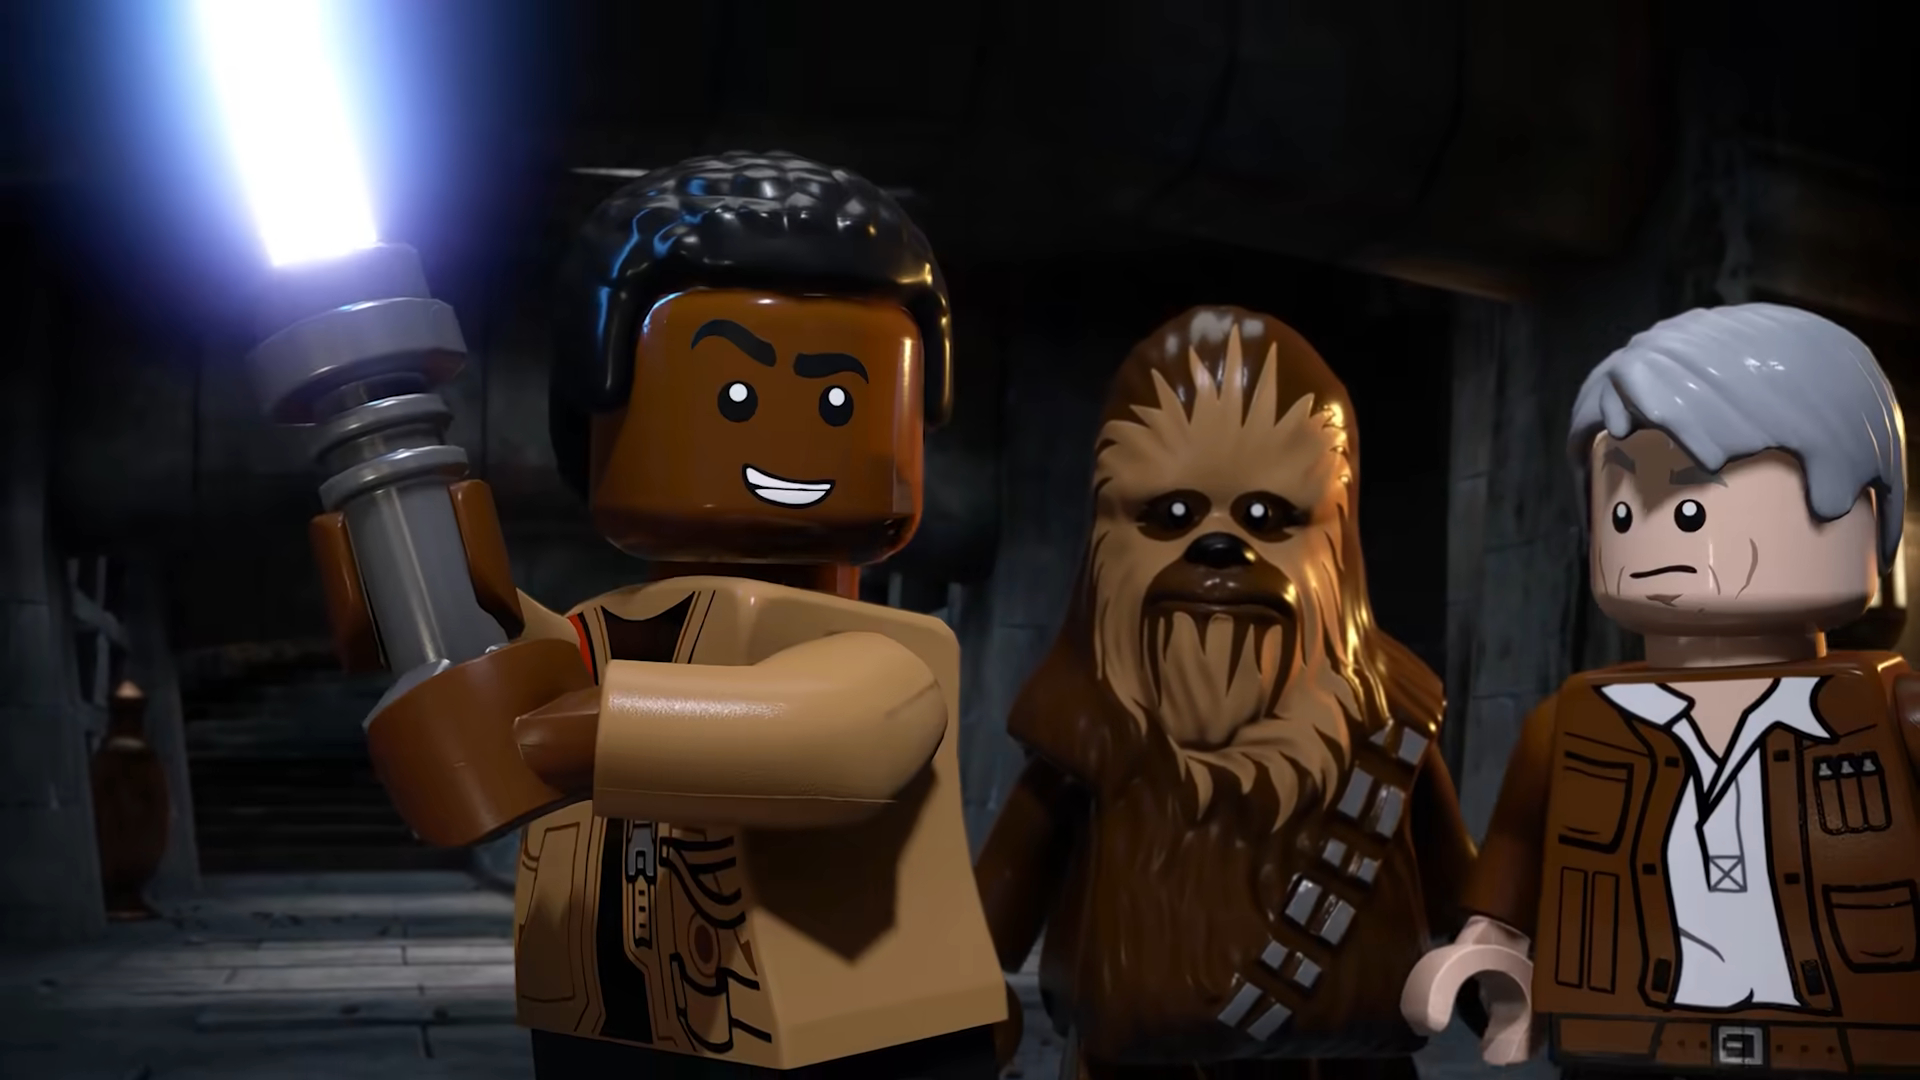 LEGO Star Wars: A Saga Skywalker – Detalhes sobre o conteúdo adicional para  download (DLC)